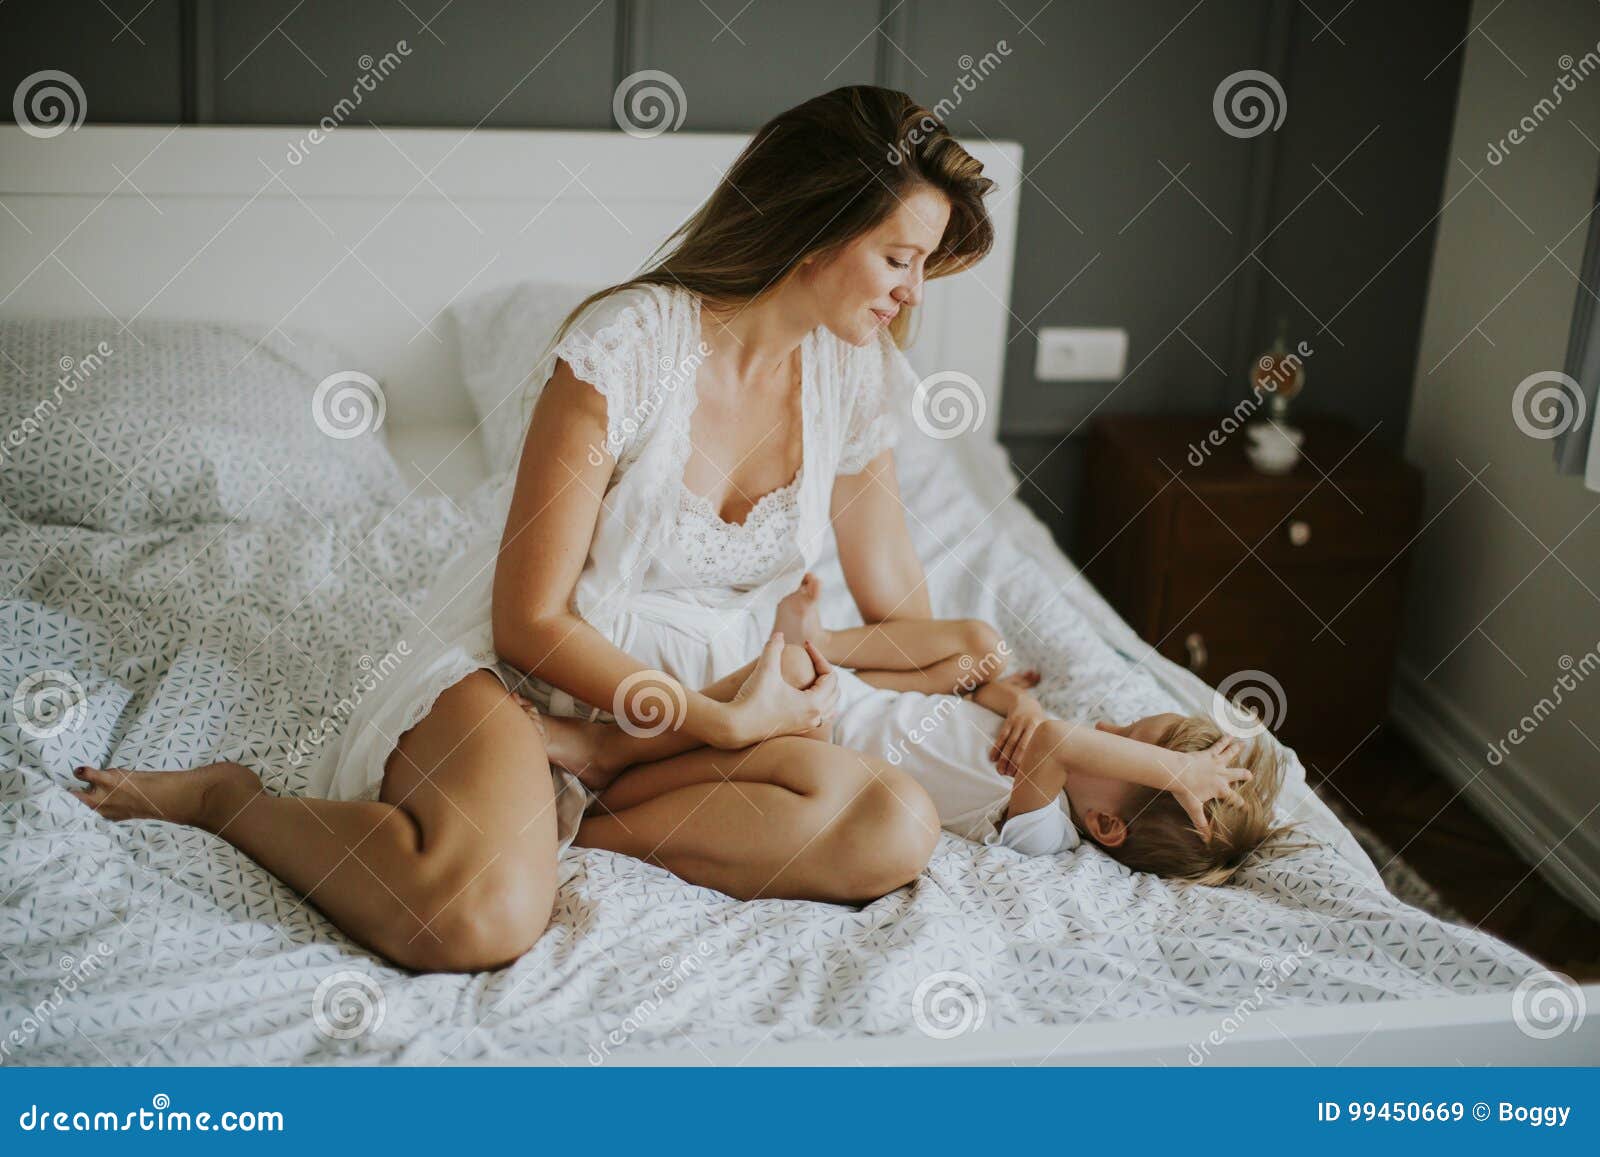 Жена в постели сына. Молодые мамы в постели. Мать у кровати. Мамочки на кровати. Женщина и мальчик в постели.